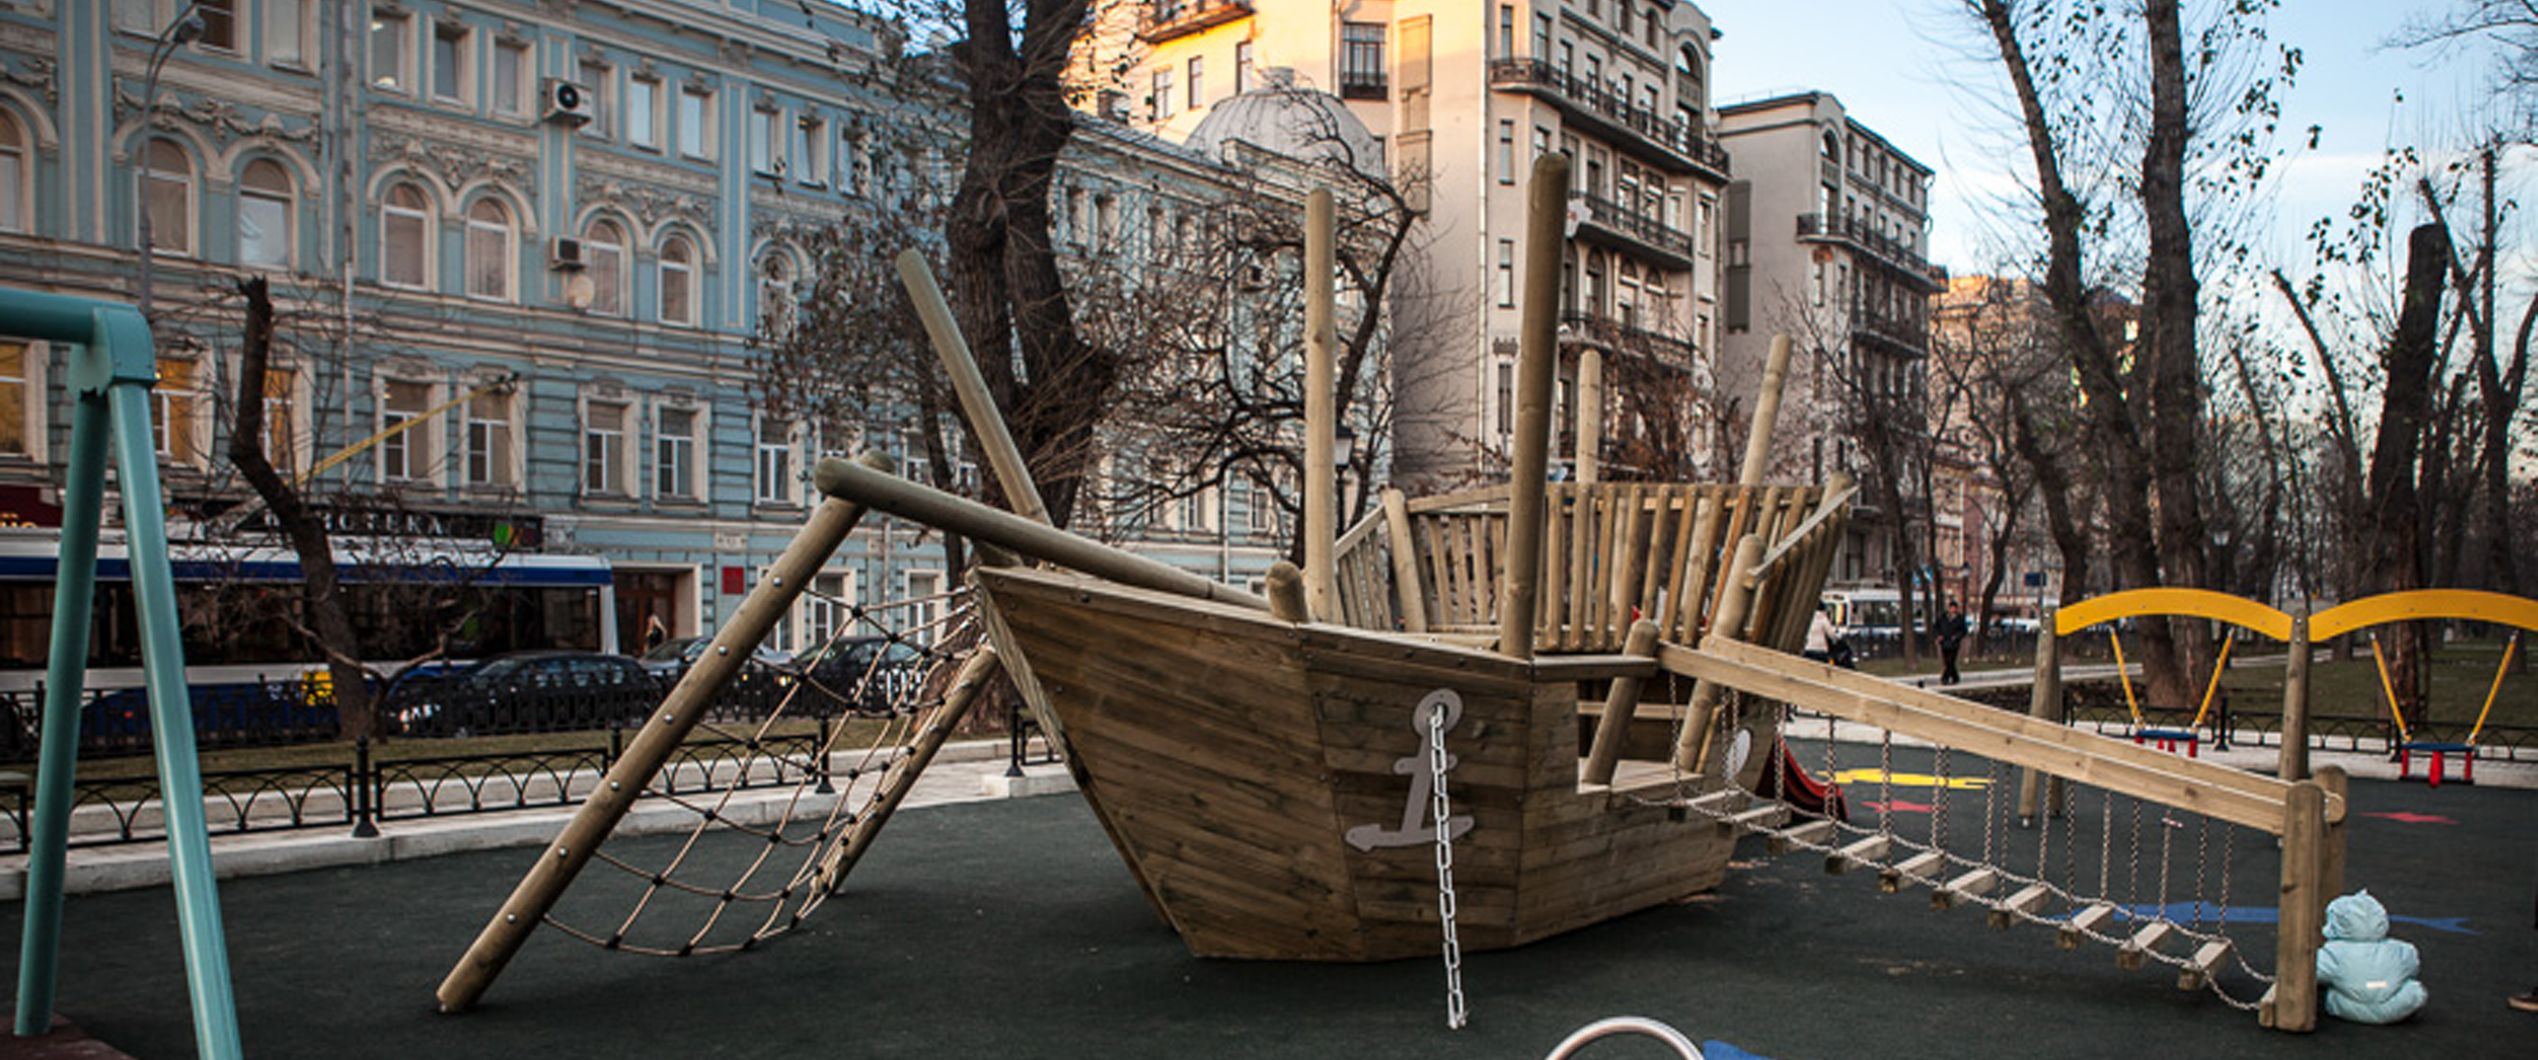 12 детских площадок, расположенных около достопримечательностей в Москве и  Санкт-Петербурге